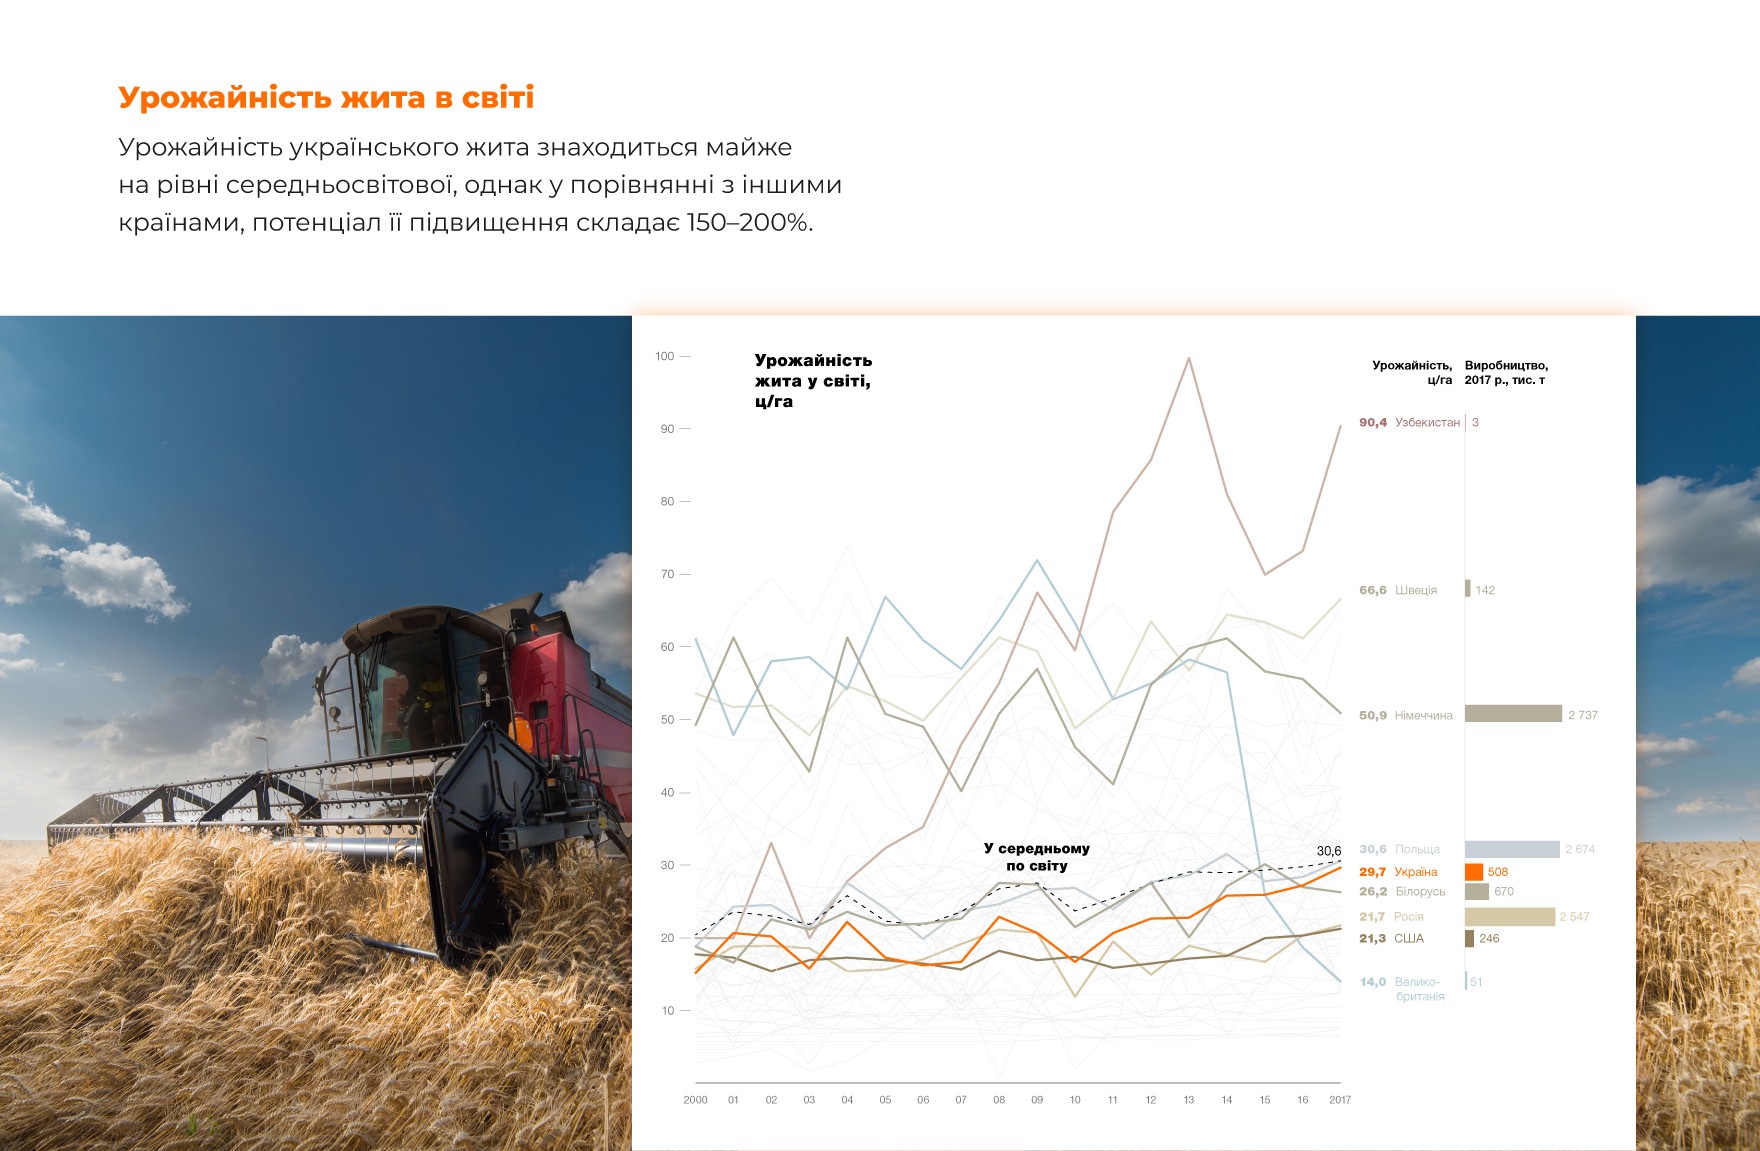 Урожайність жита в світі. Урожайність українського жита знаходиться майже на рівні середньосвітової, однак у порівнянні з іншими країнами, потенціал її підвищення складає 150-200%.